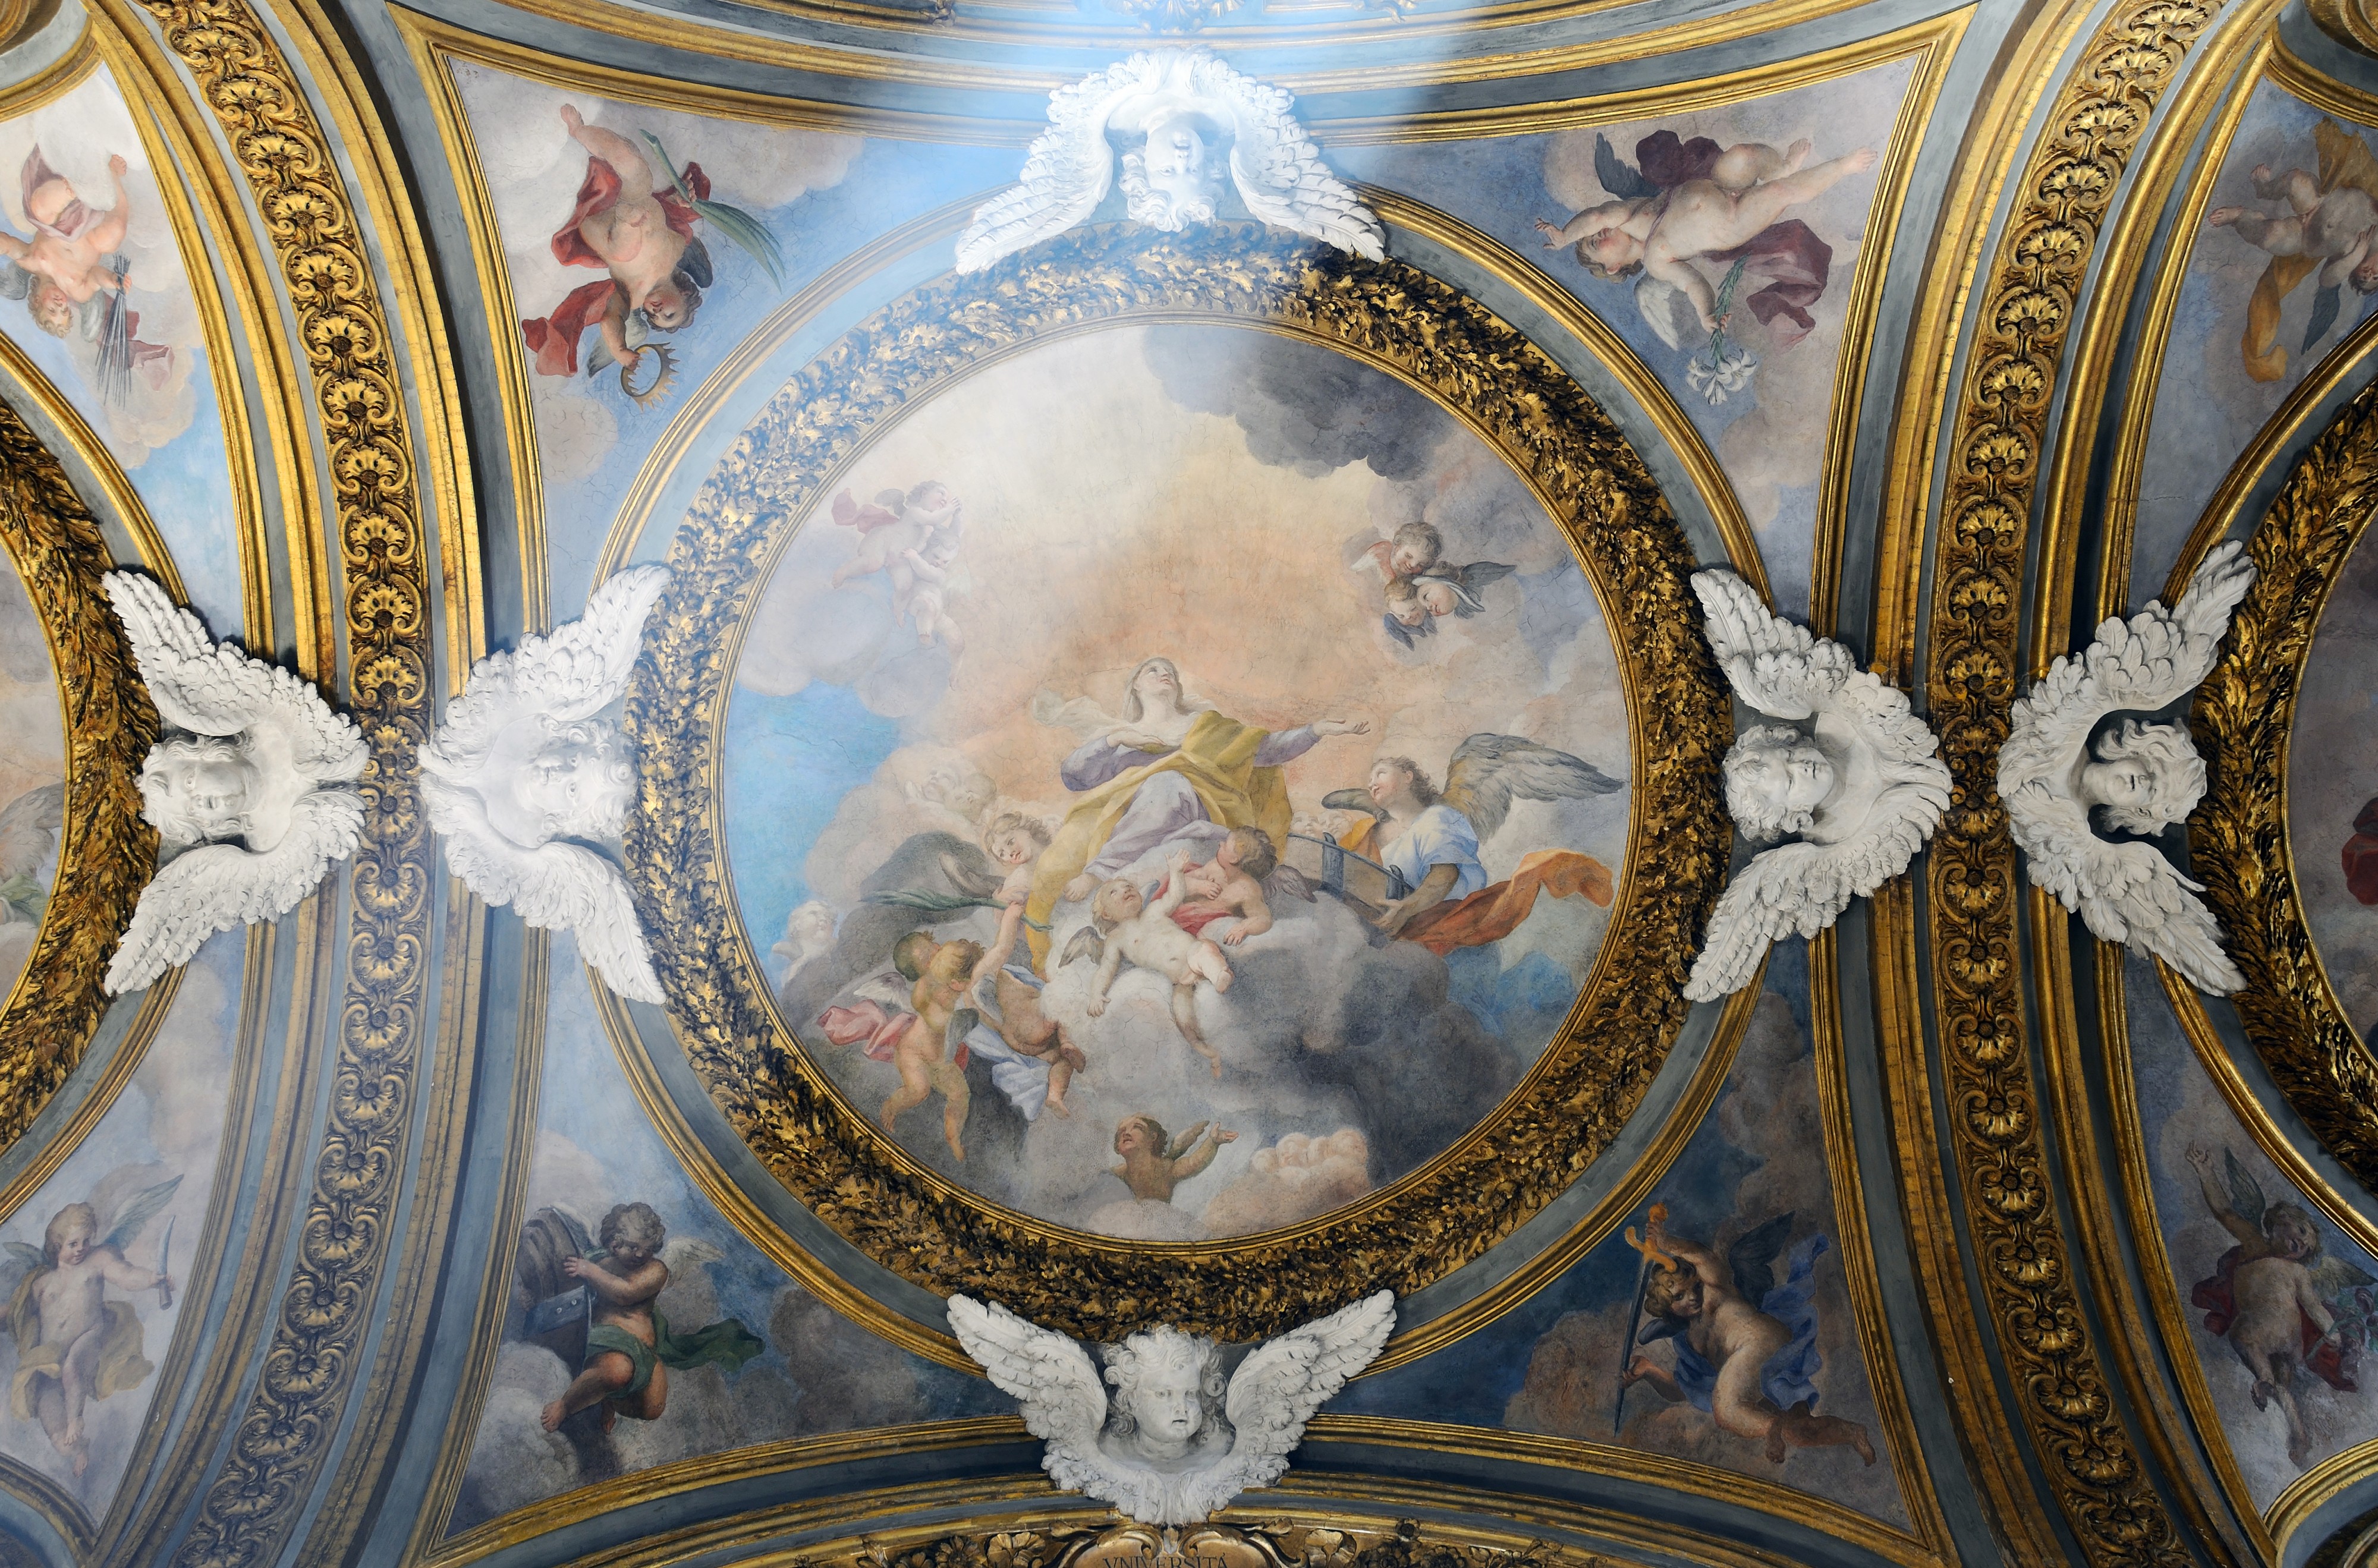 Second right chapel ceiling in Santa Maria dell'Orto (Rome)